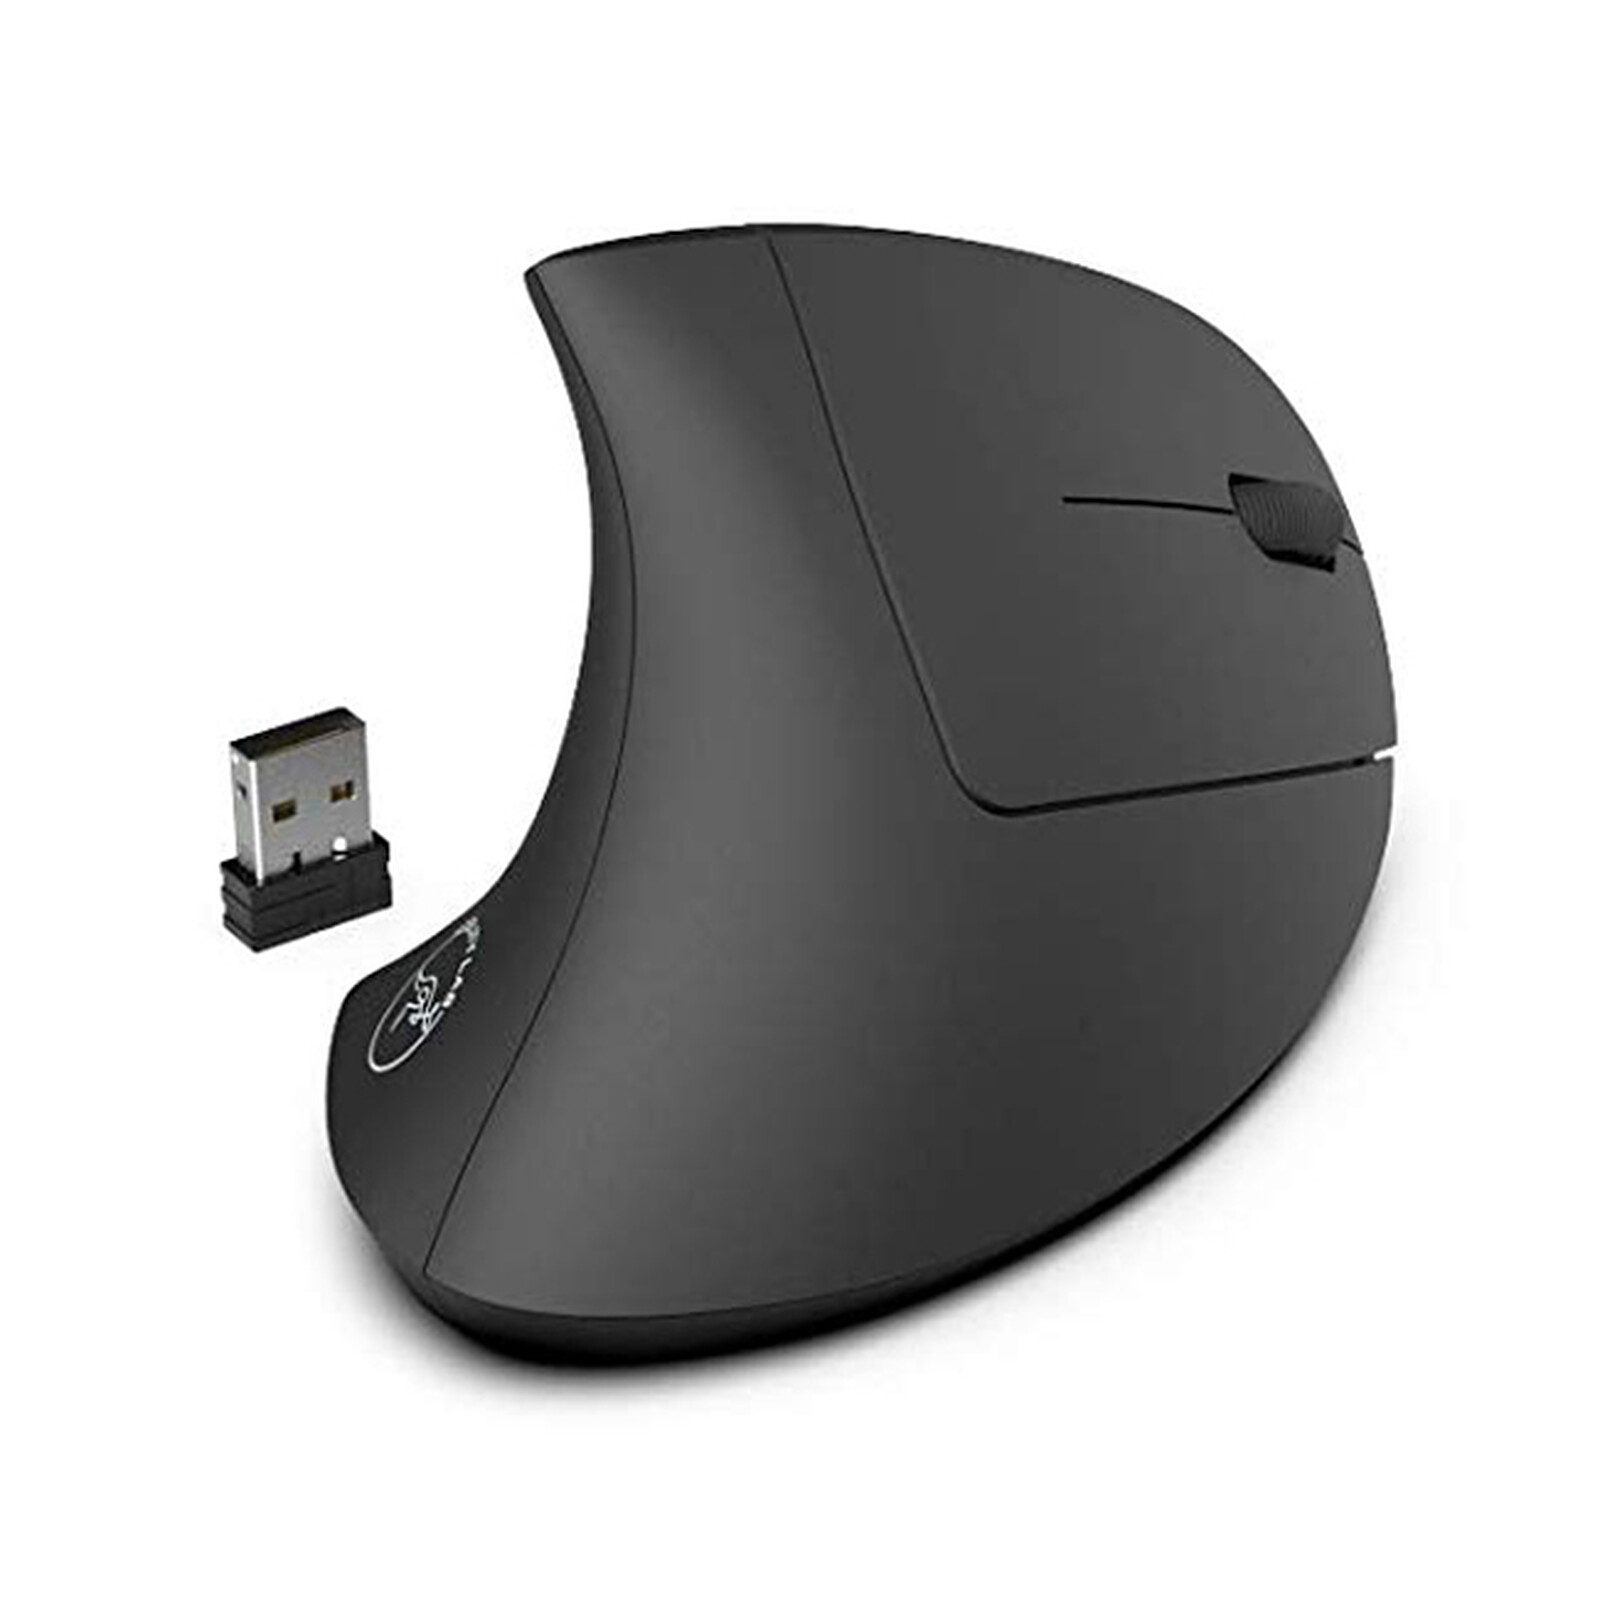 Mobility Lab Wireless USB-C Mouse - Souris PC - Garantie 3 ans